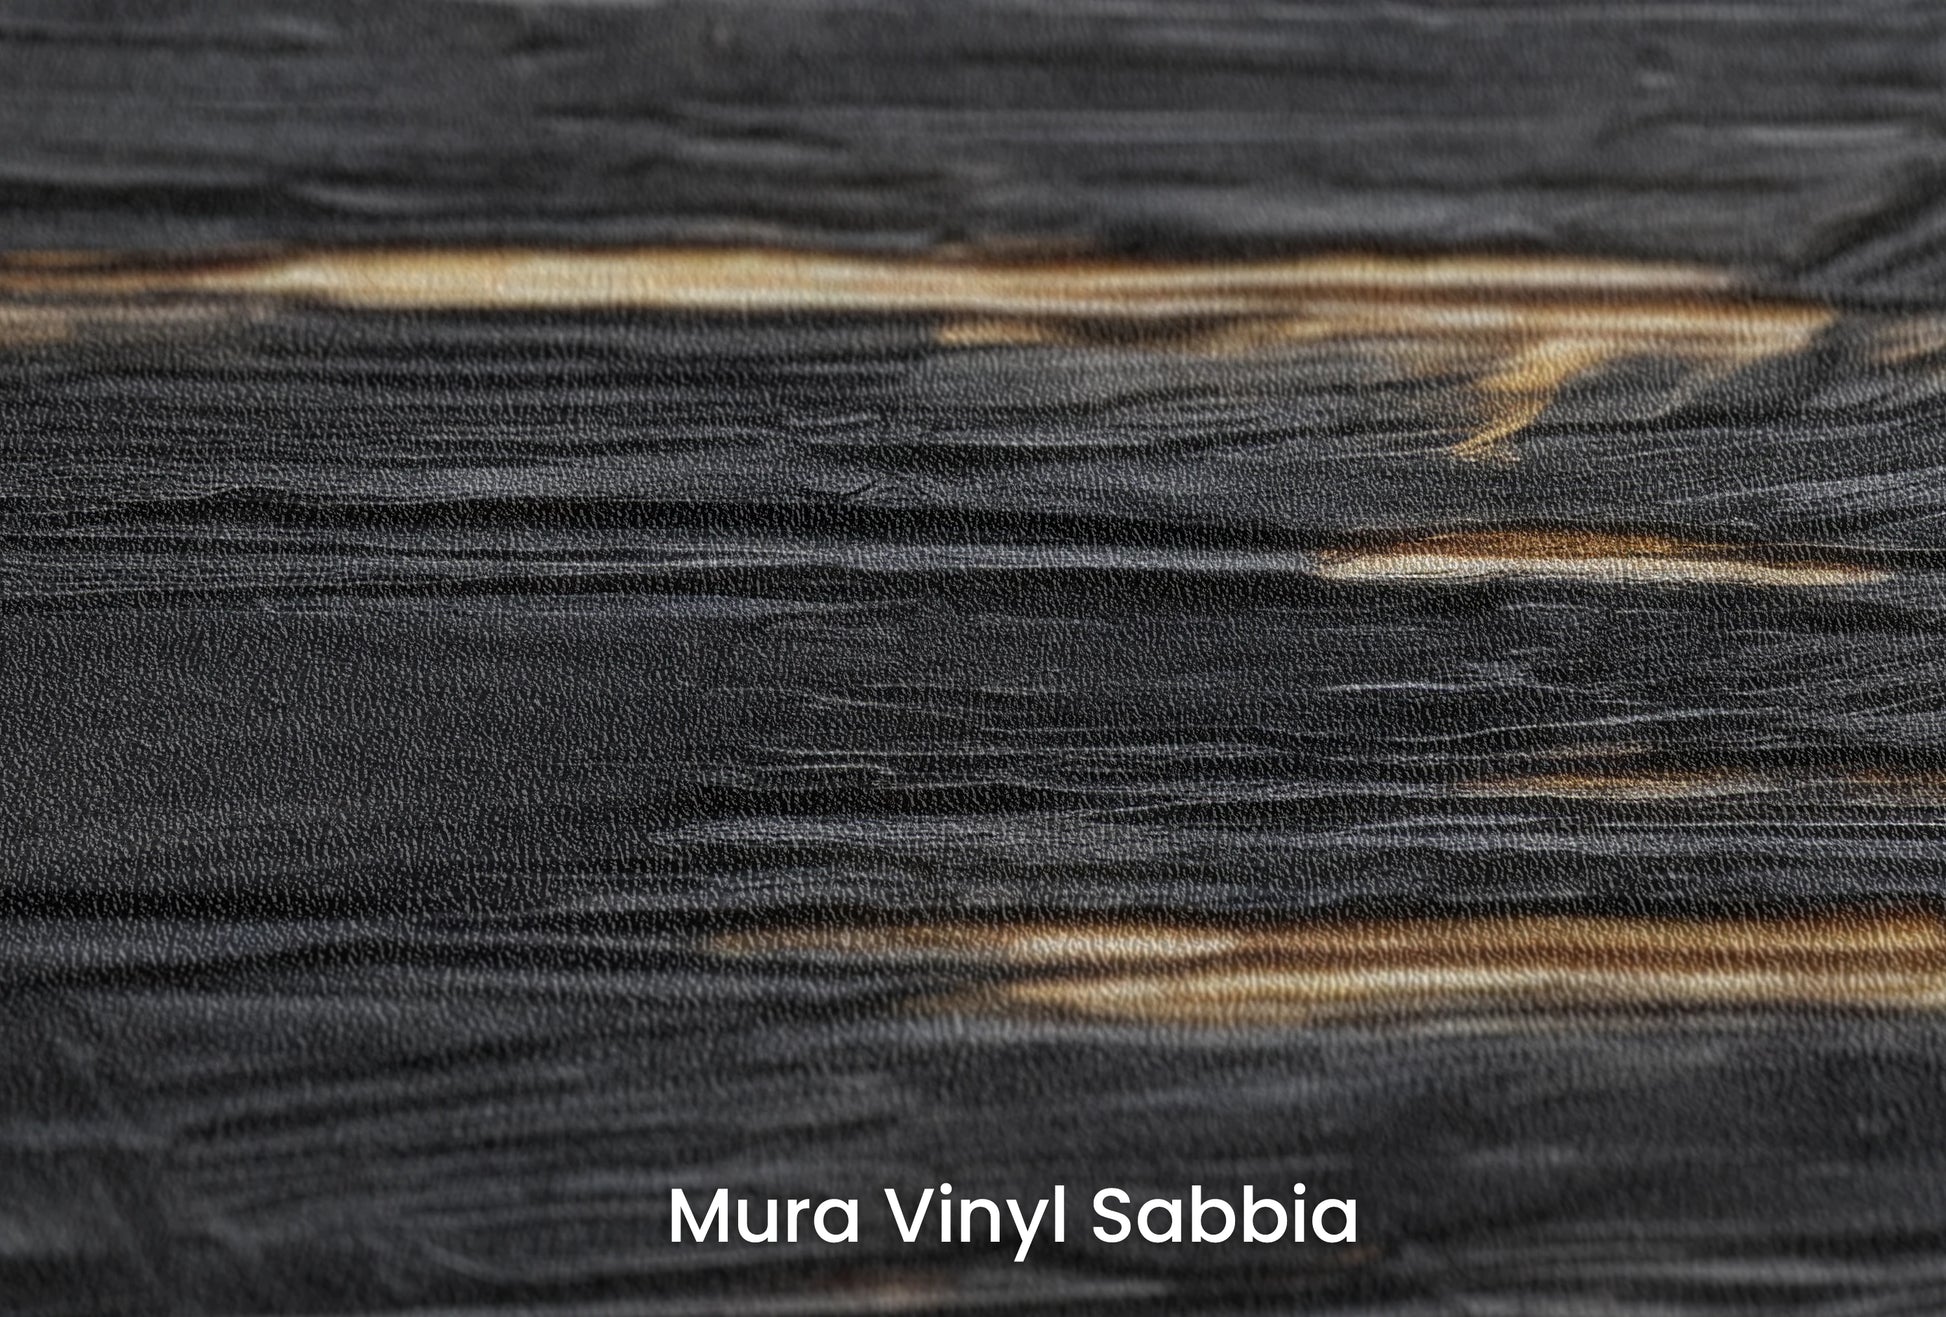 Zbliżenie na artystyczną fototapetę o nazwie Dark Currents na podłożu Mura Vinyl Sabbia struktura grubego ziarna piasku.